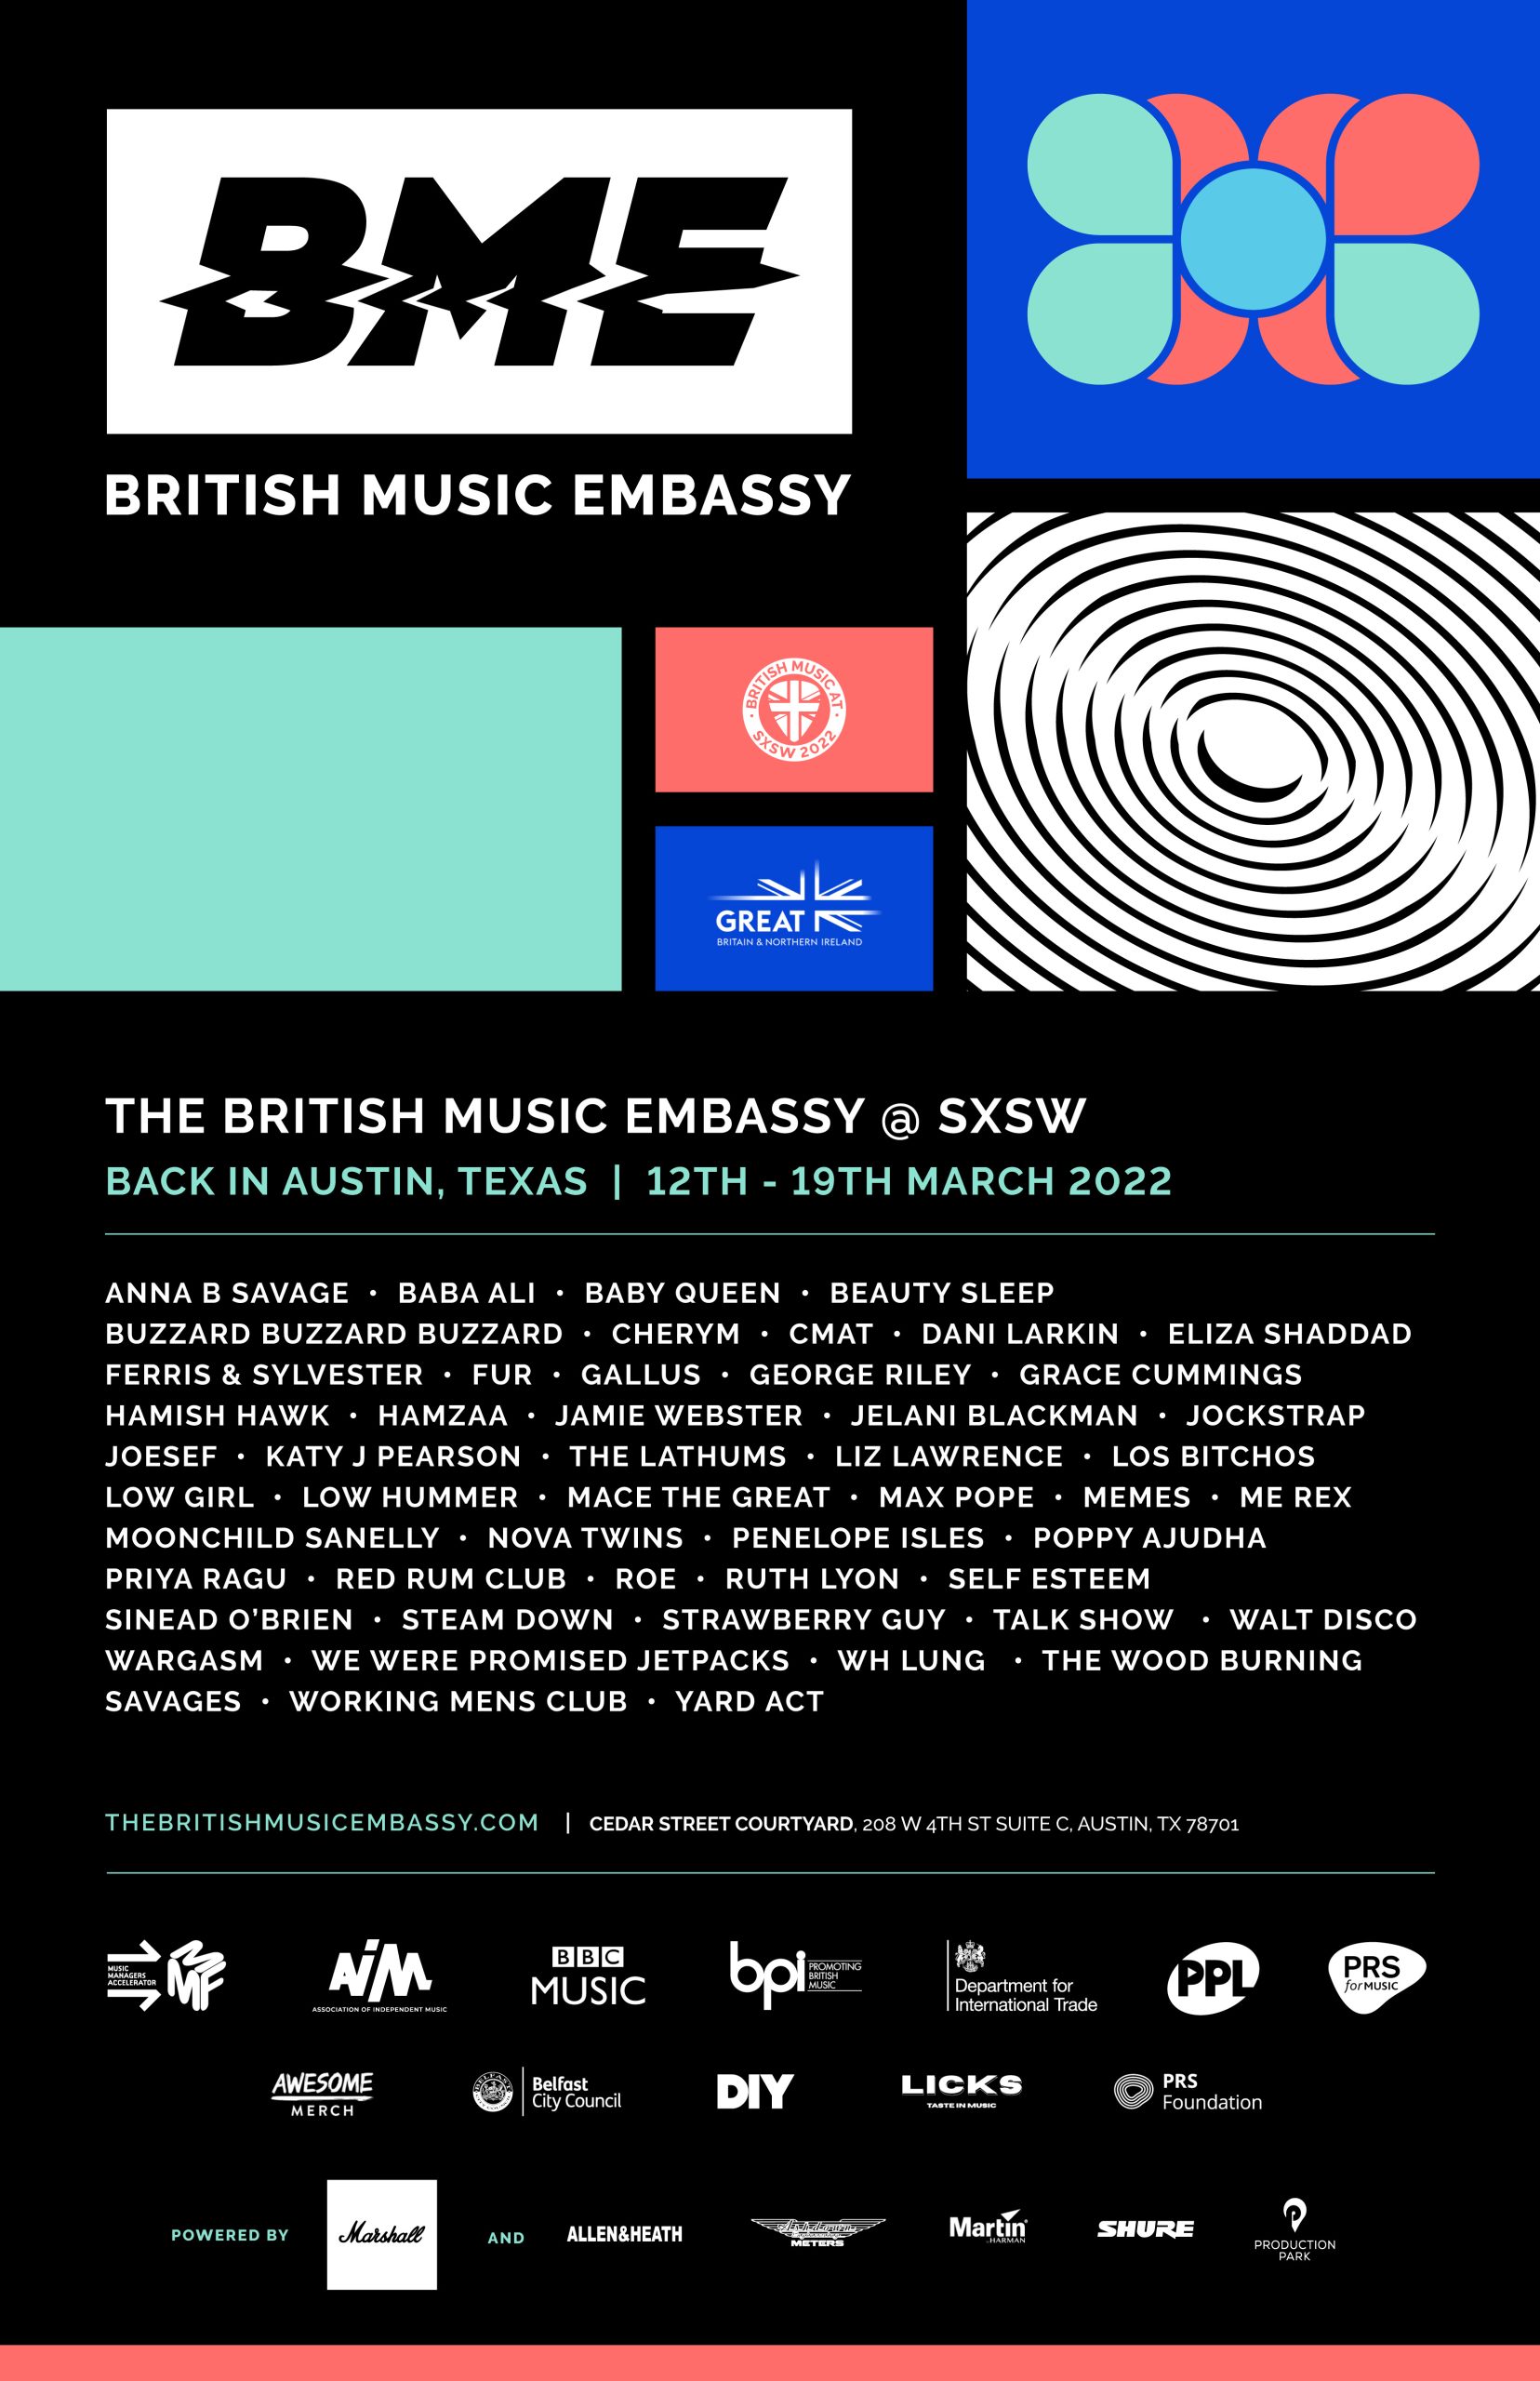 British Music Embassy at SXSW 2022 Priya Ragu, Yard Act & More